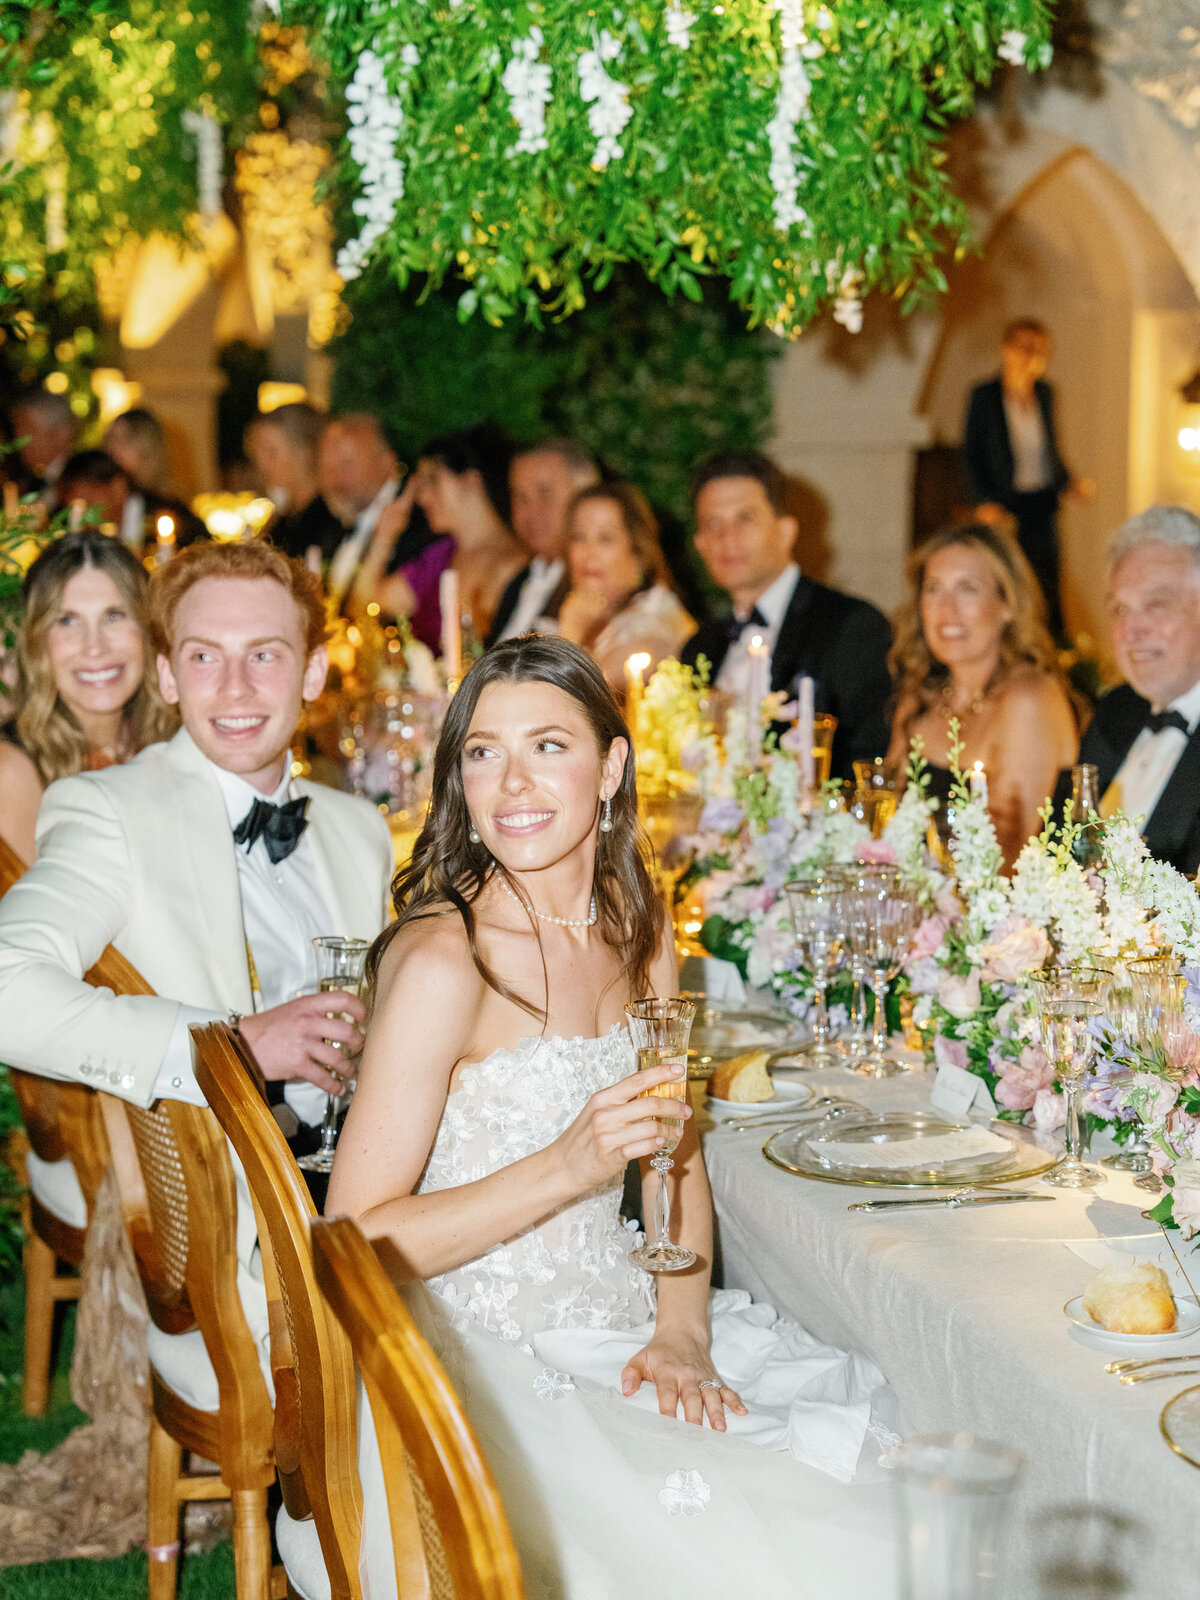 Bride-groom-dinner-table